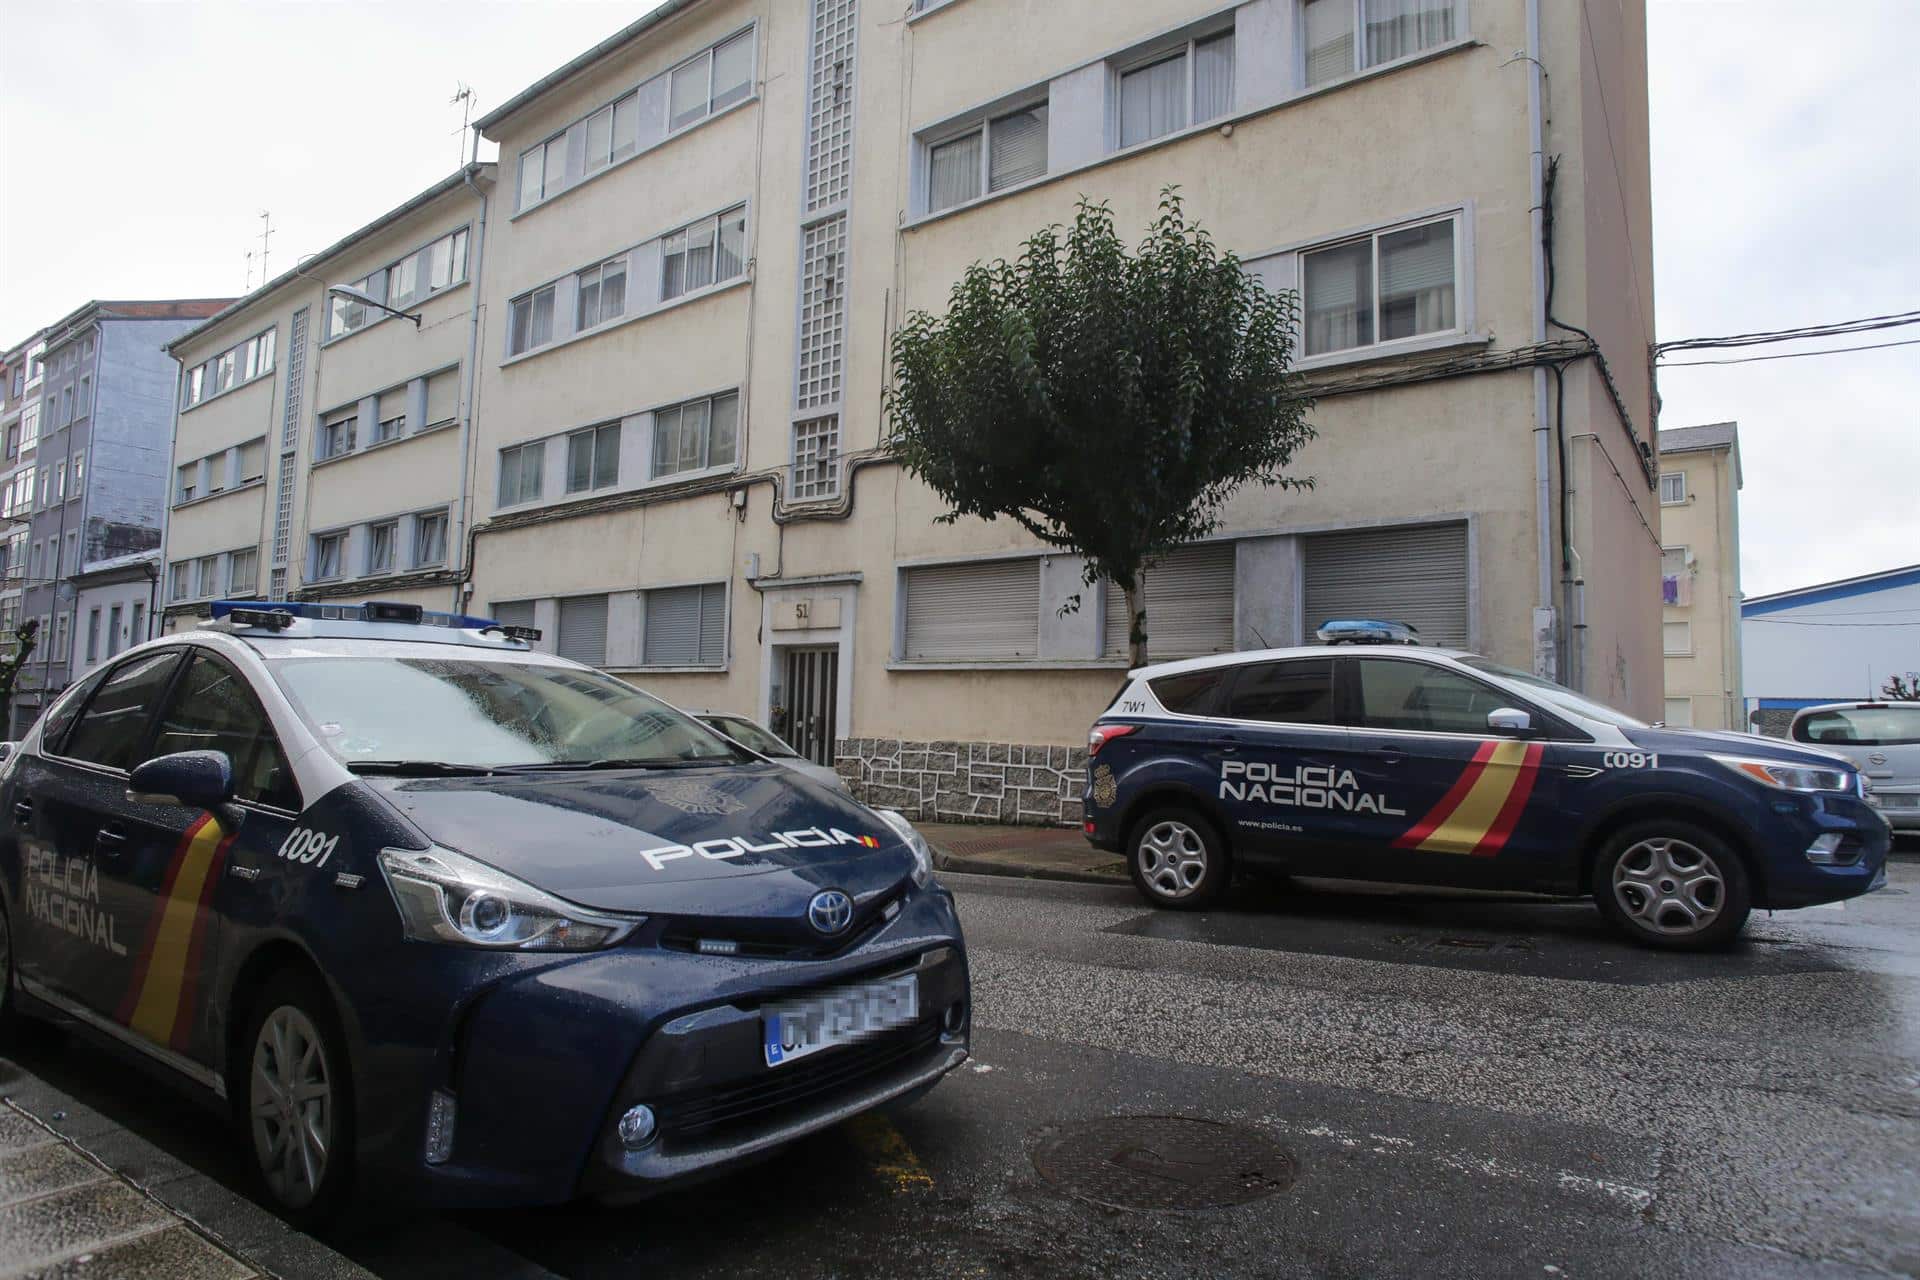 Dos vehículos de Policía Nacional en la puerta de la vivienda donde han hallado muerta a una mujer de 42 años | EP